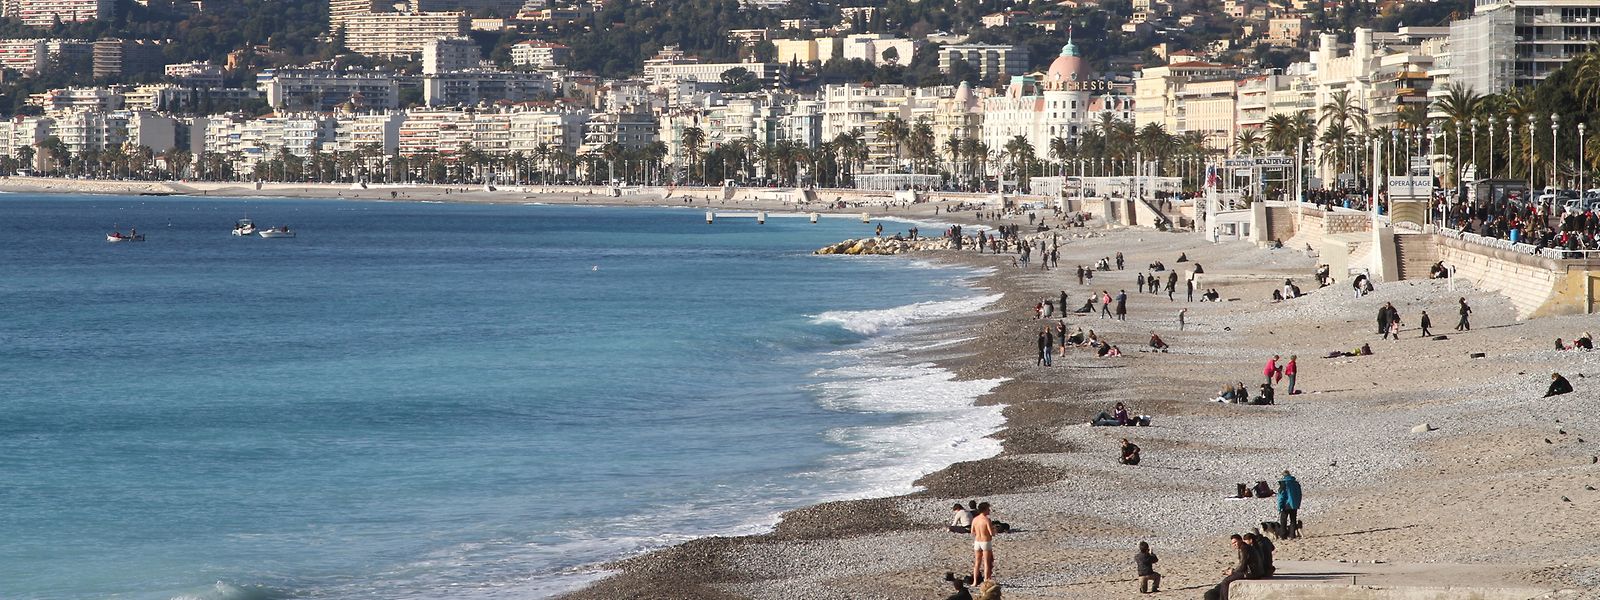 Nizza: Traumhaftes Wetter und Strände locken alljährlich Millionen von Touristen an die Côte d’Azur. Doch dieses Jahr ist alles anders.